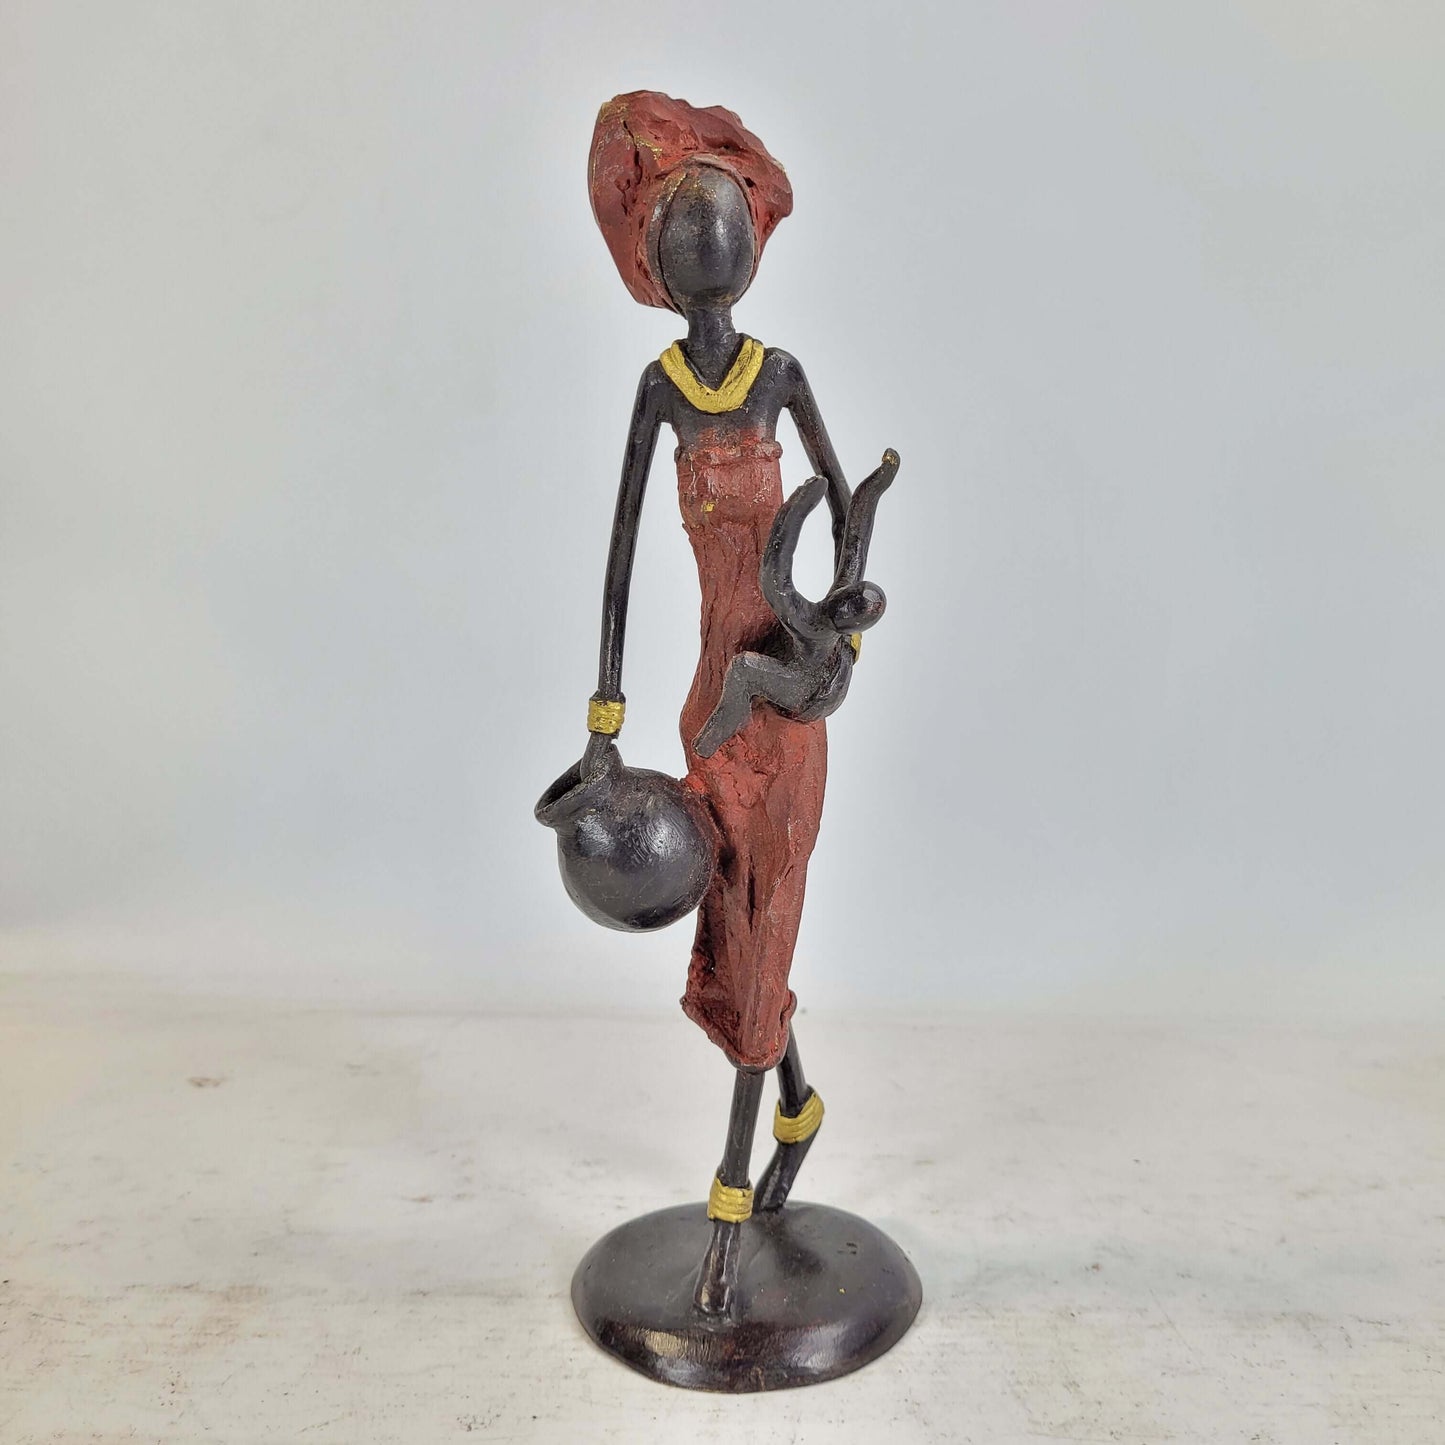 Bronze-Skulptur "Frau mit Amphora und Kind an der Taille" by Issouf | 25 cm